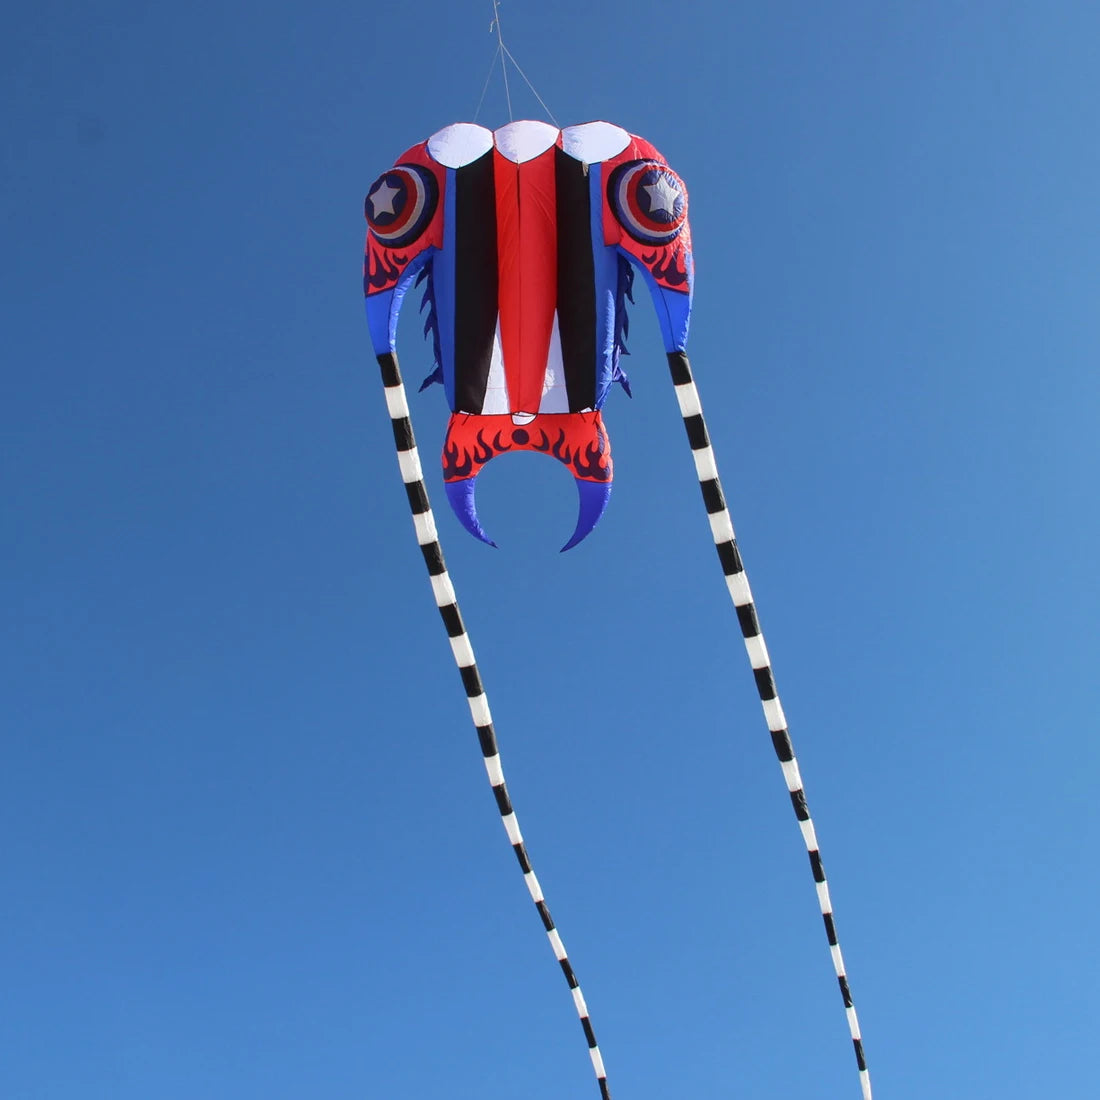 Trilobite Kite Large Single Line Parafoil Kite Line Laundry for 7㎡~16㎡ - ToylandEU